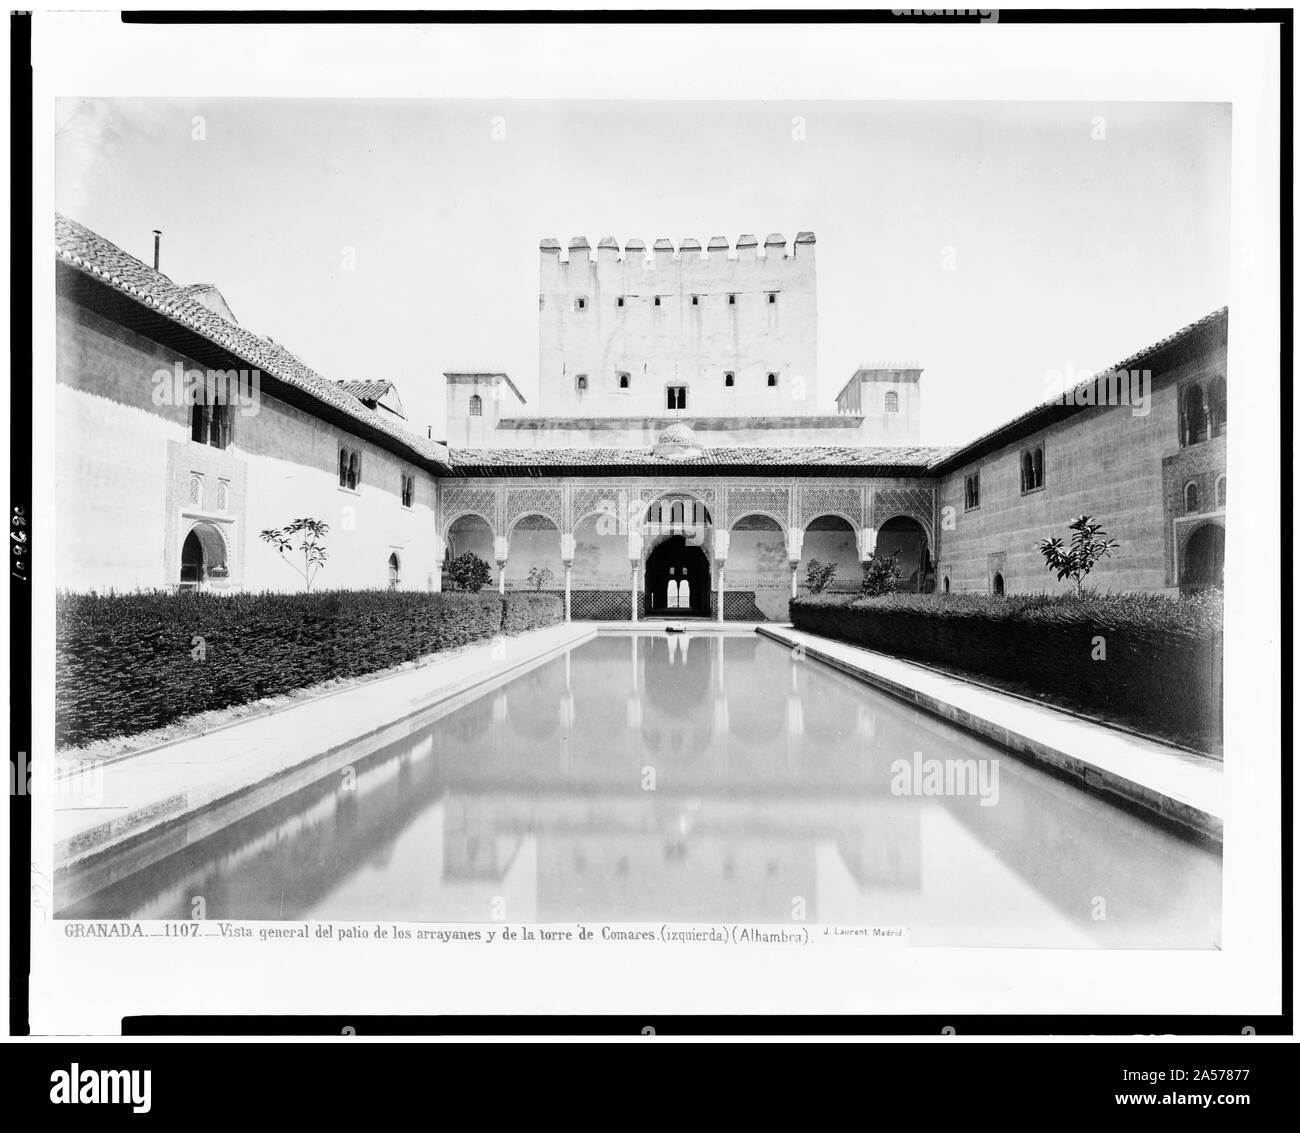 Vista allgemeine del Patio de Los Arrayanes y de la Torre de Comares (Izquierda) (Alhambra)/J. Laurent. Madrid. Stockfoto